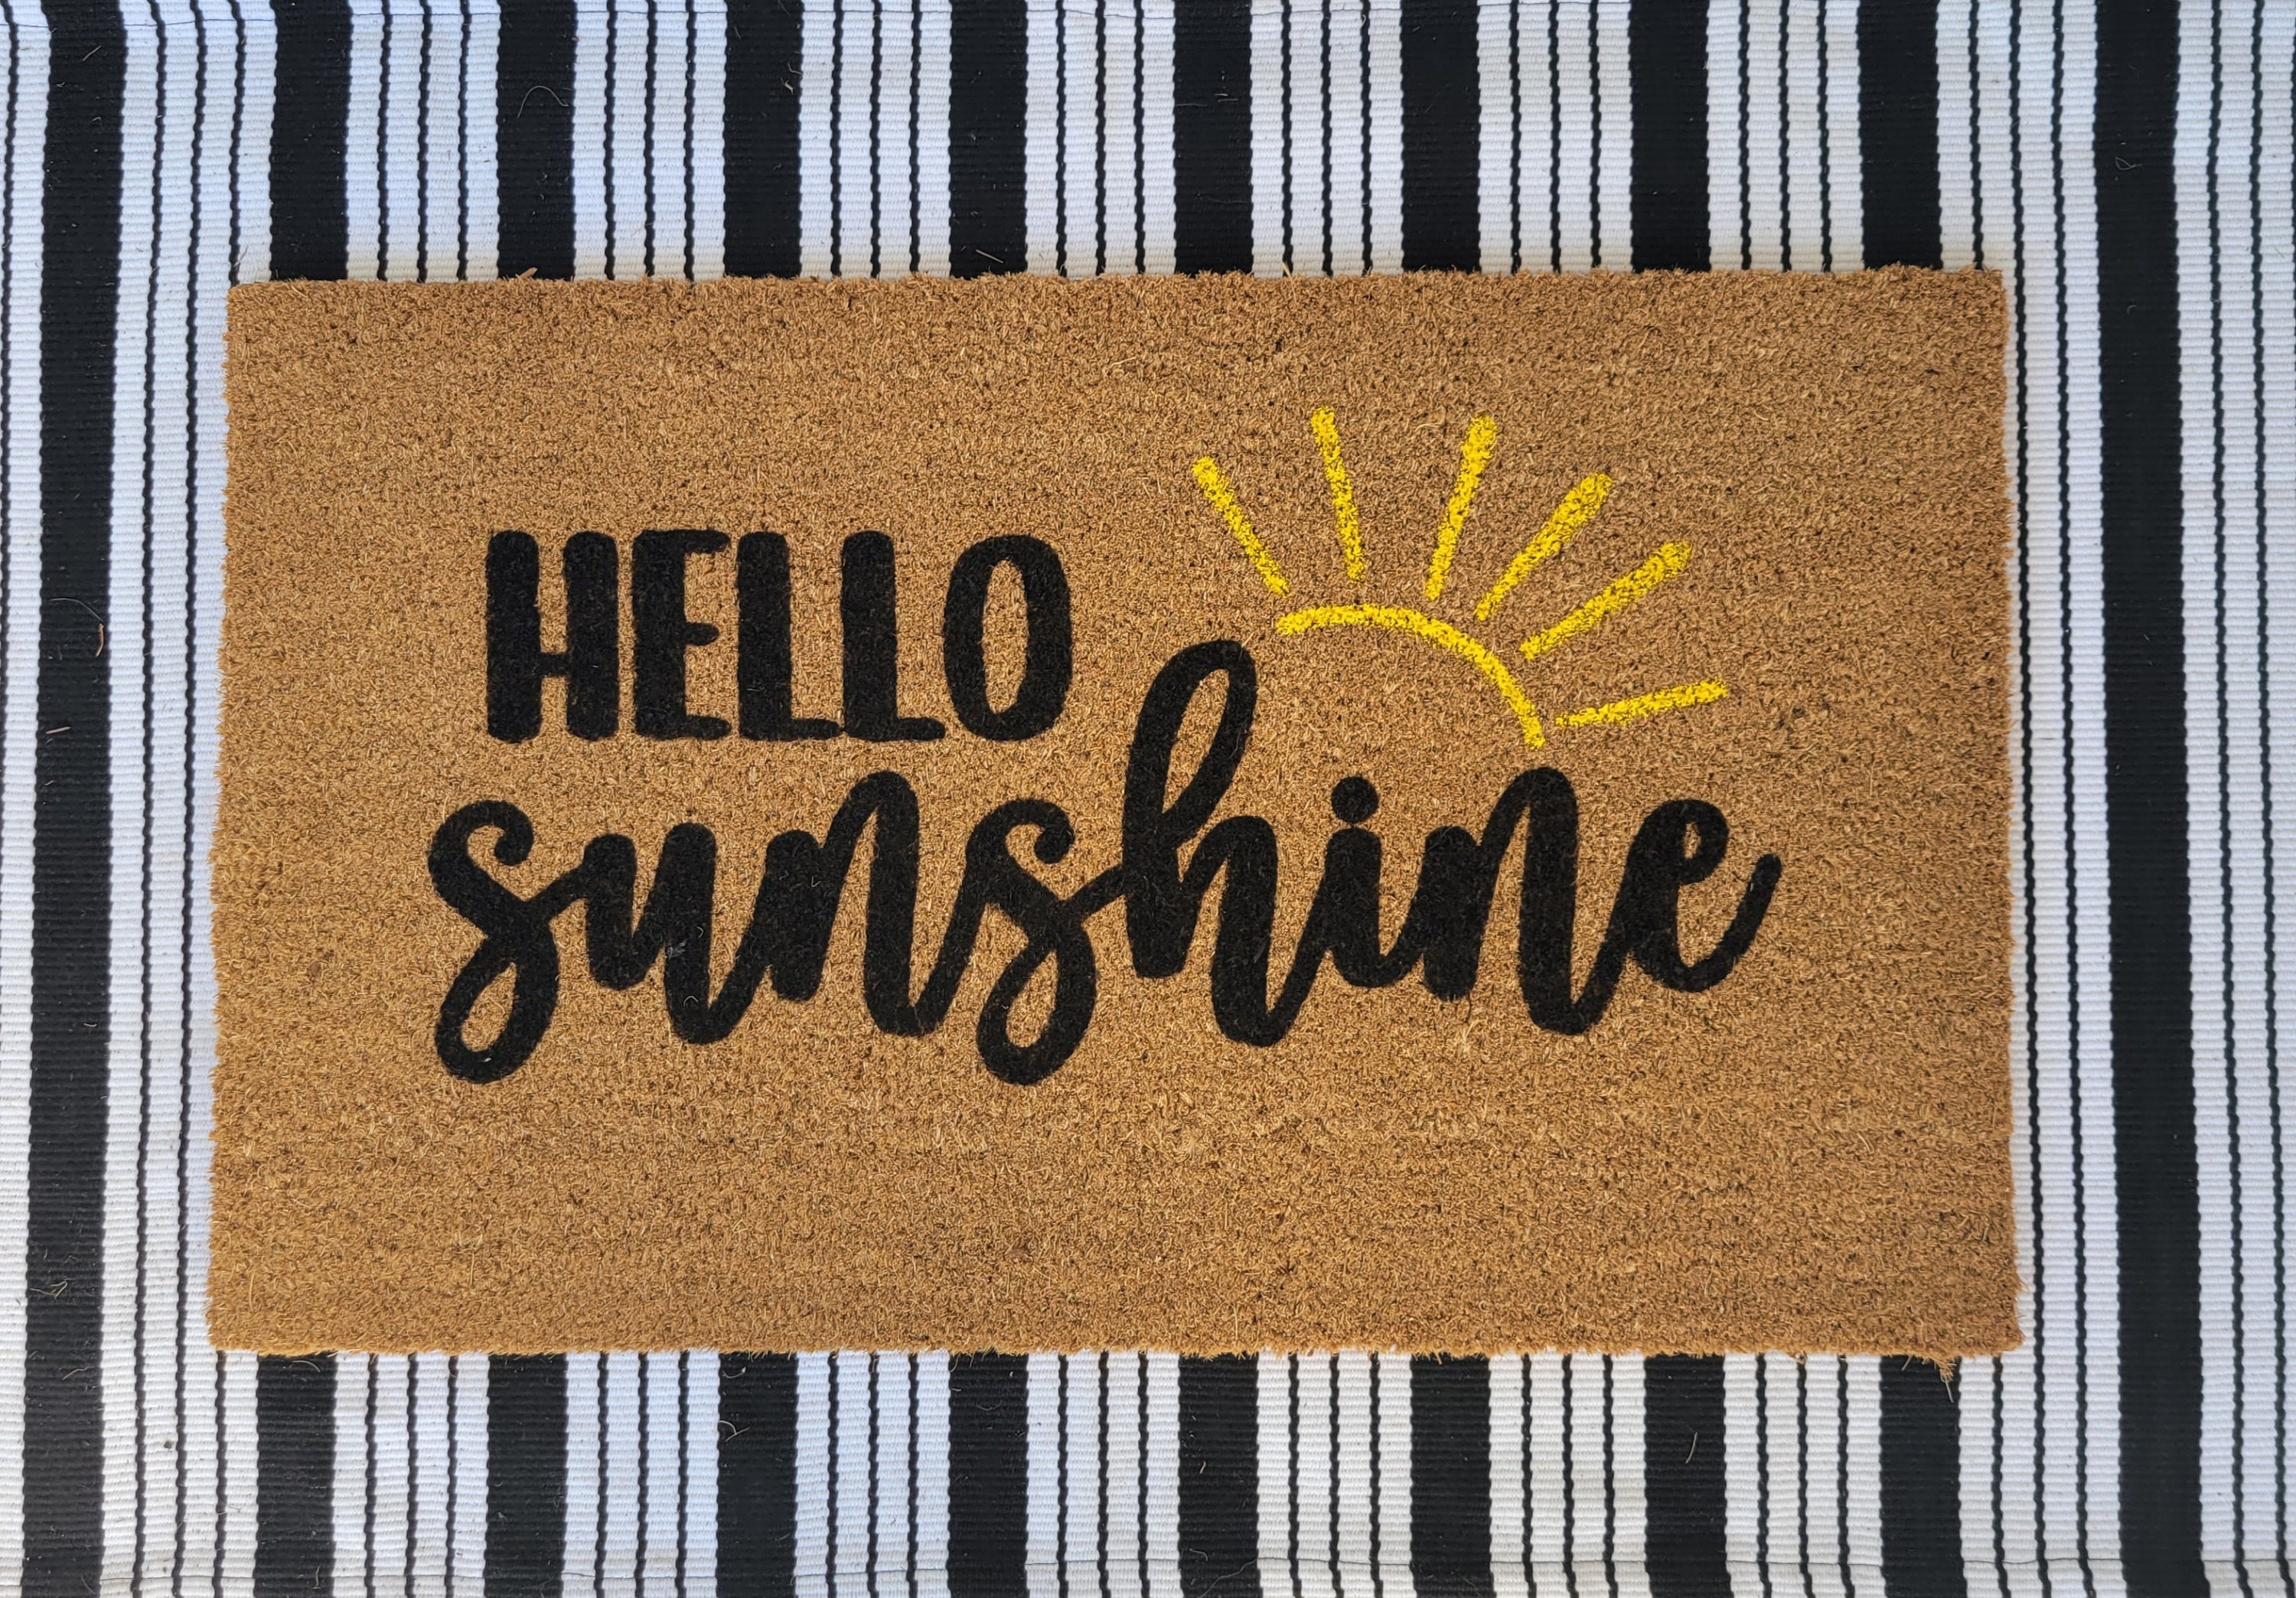 Eikunn Hello Sunshine Summer Door Mat, Welcome Doormat for Entrance Indoor/Outdoor, Non-Slip Machine Washable Floor Mats for Patio Entry & Mudroom Seasonal